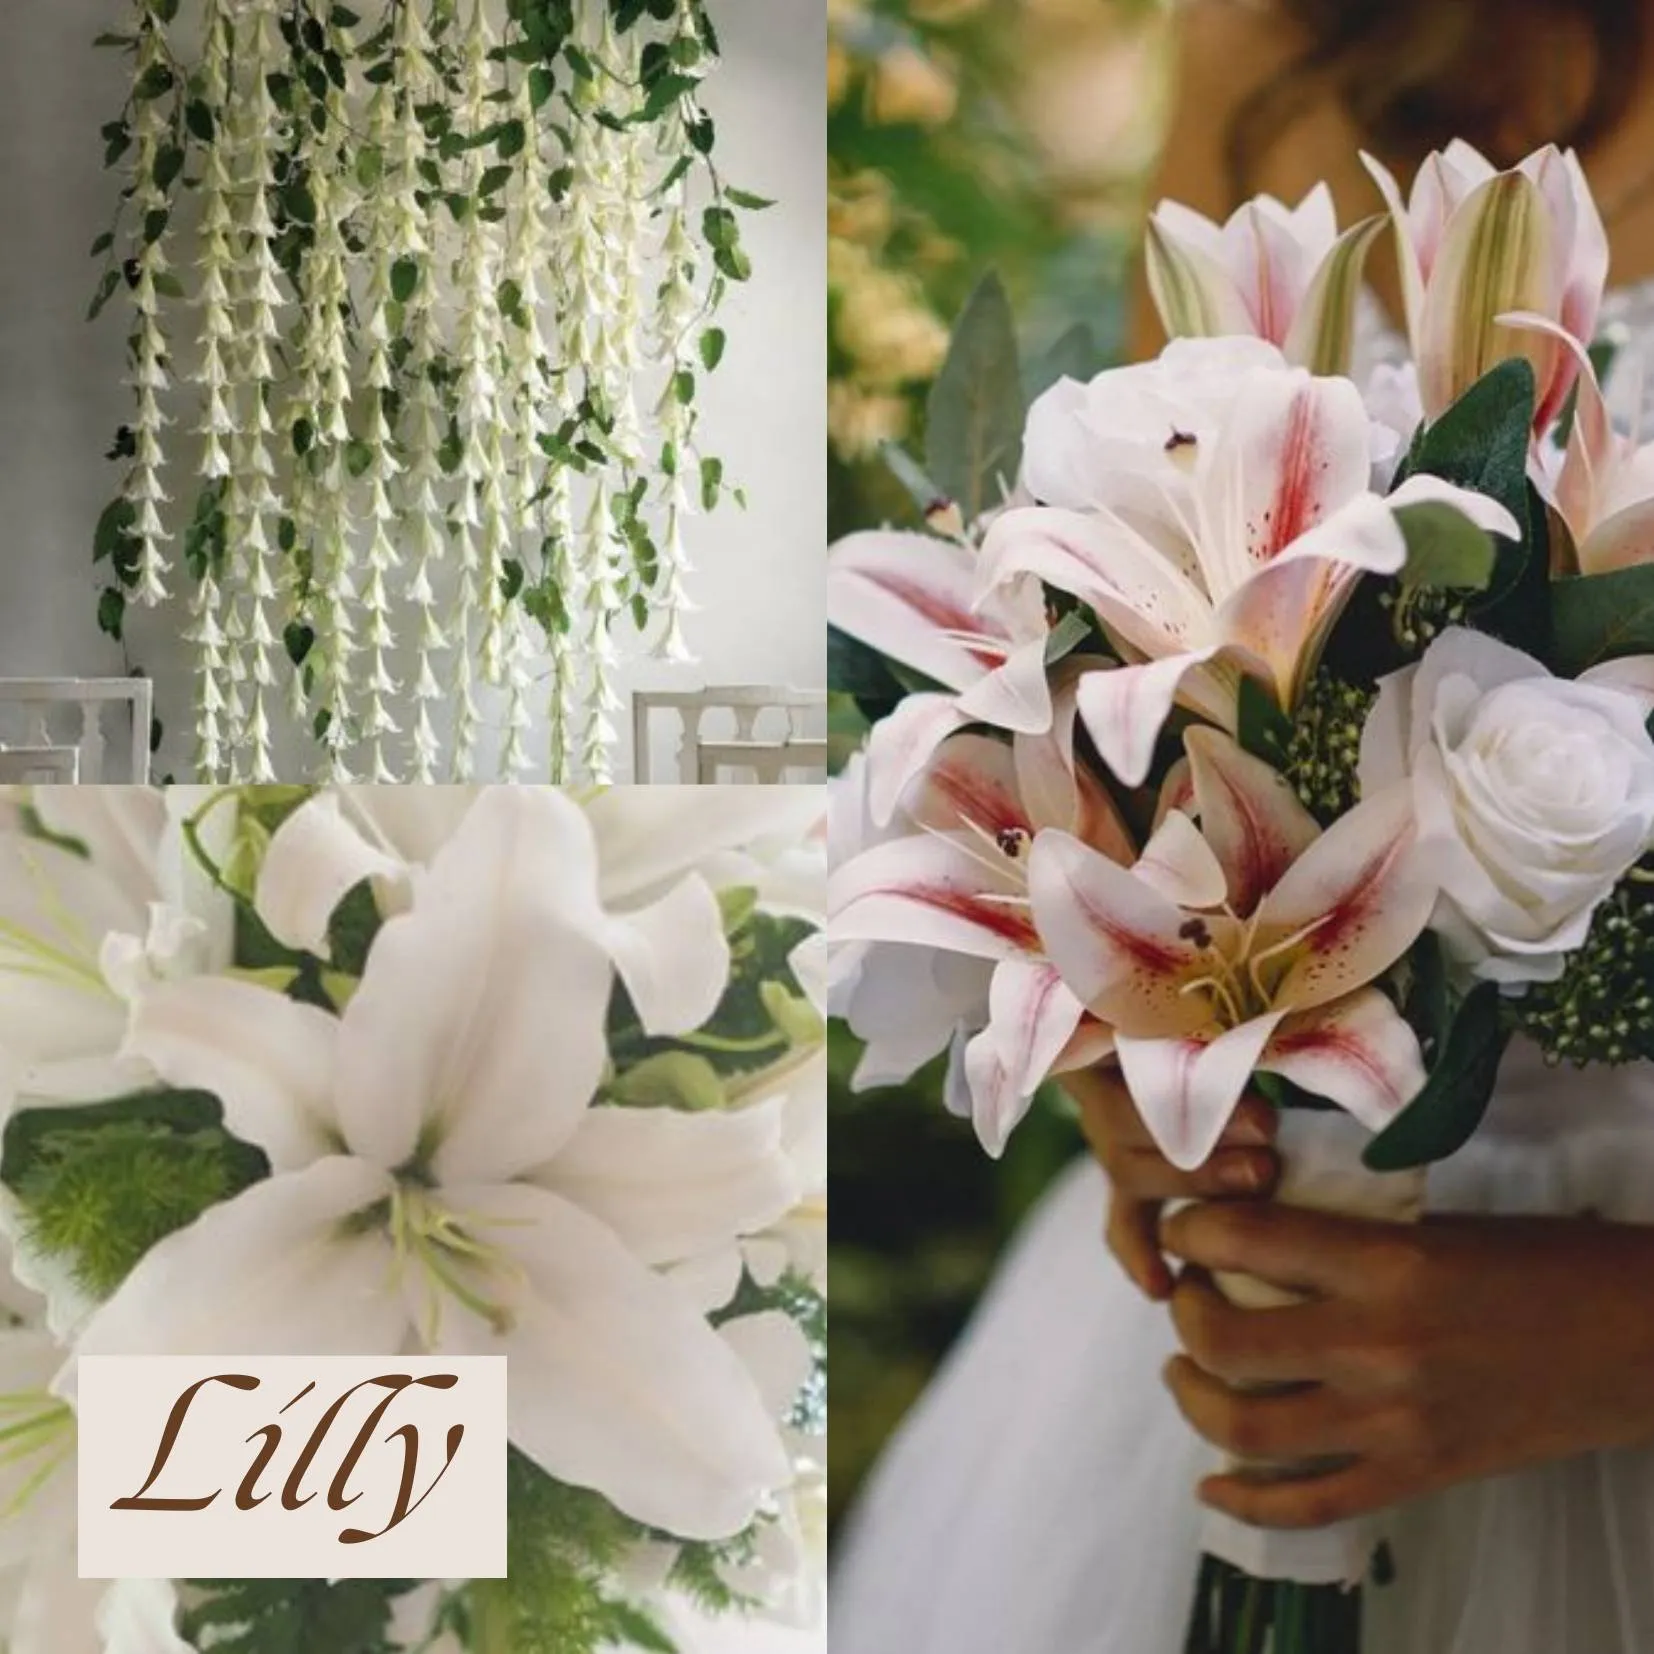 ดอกไม้ในวันแต่งงาน - ดอกลิลลี่ (Lilly)